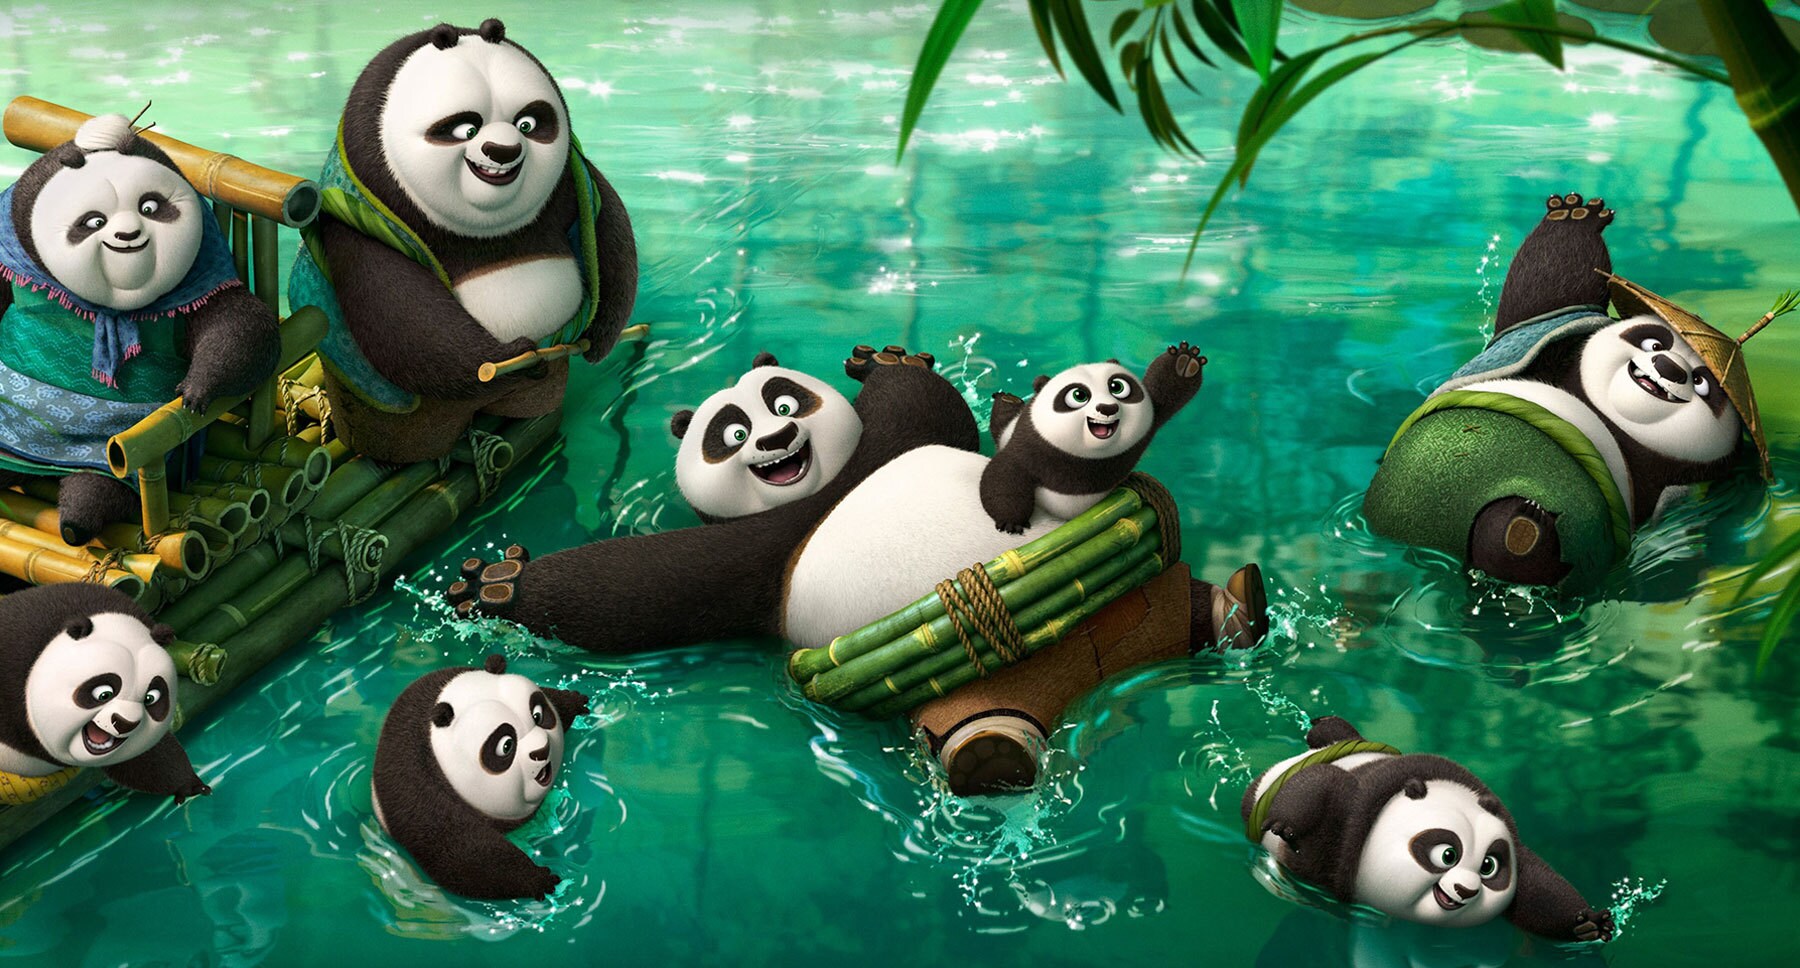 kung fu panda 3 free online movie free